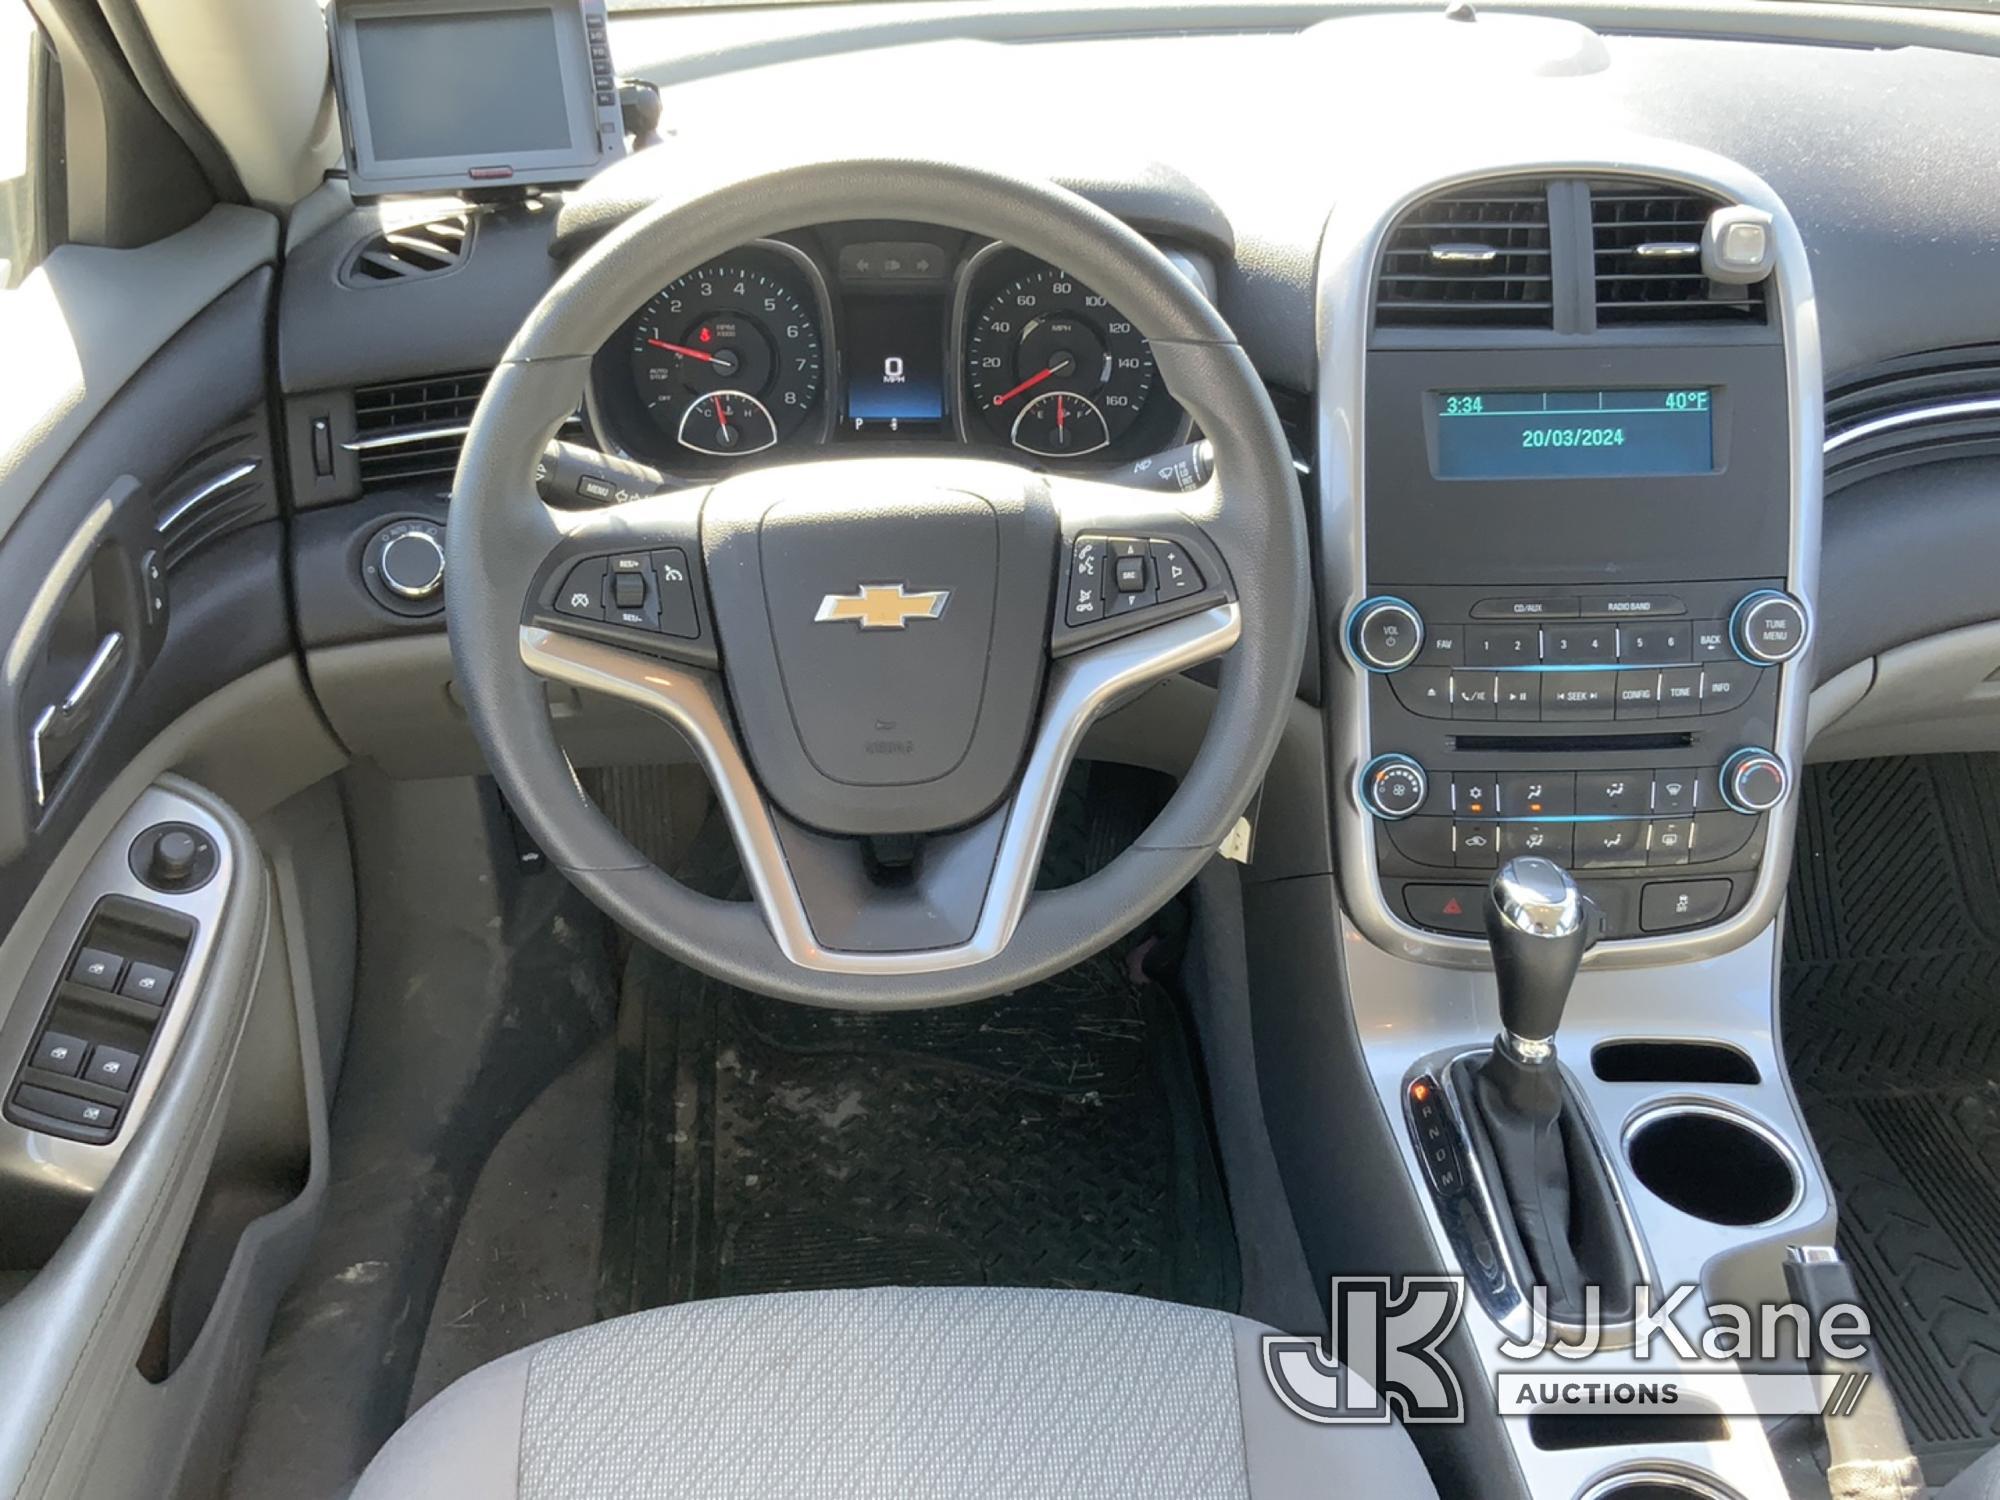 (South Beloit, IL) 2015 Chevrolet Malibu LS 4-Door Sedan Runs & Moves